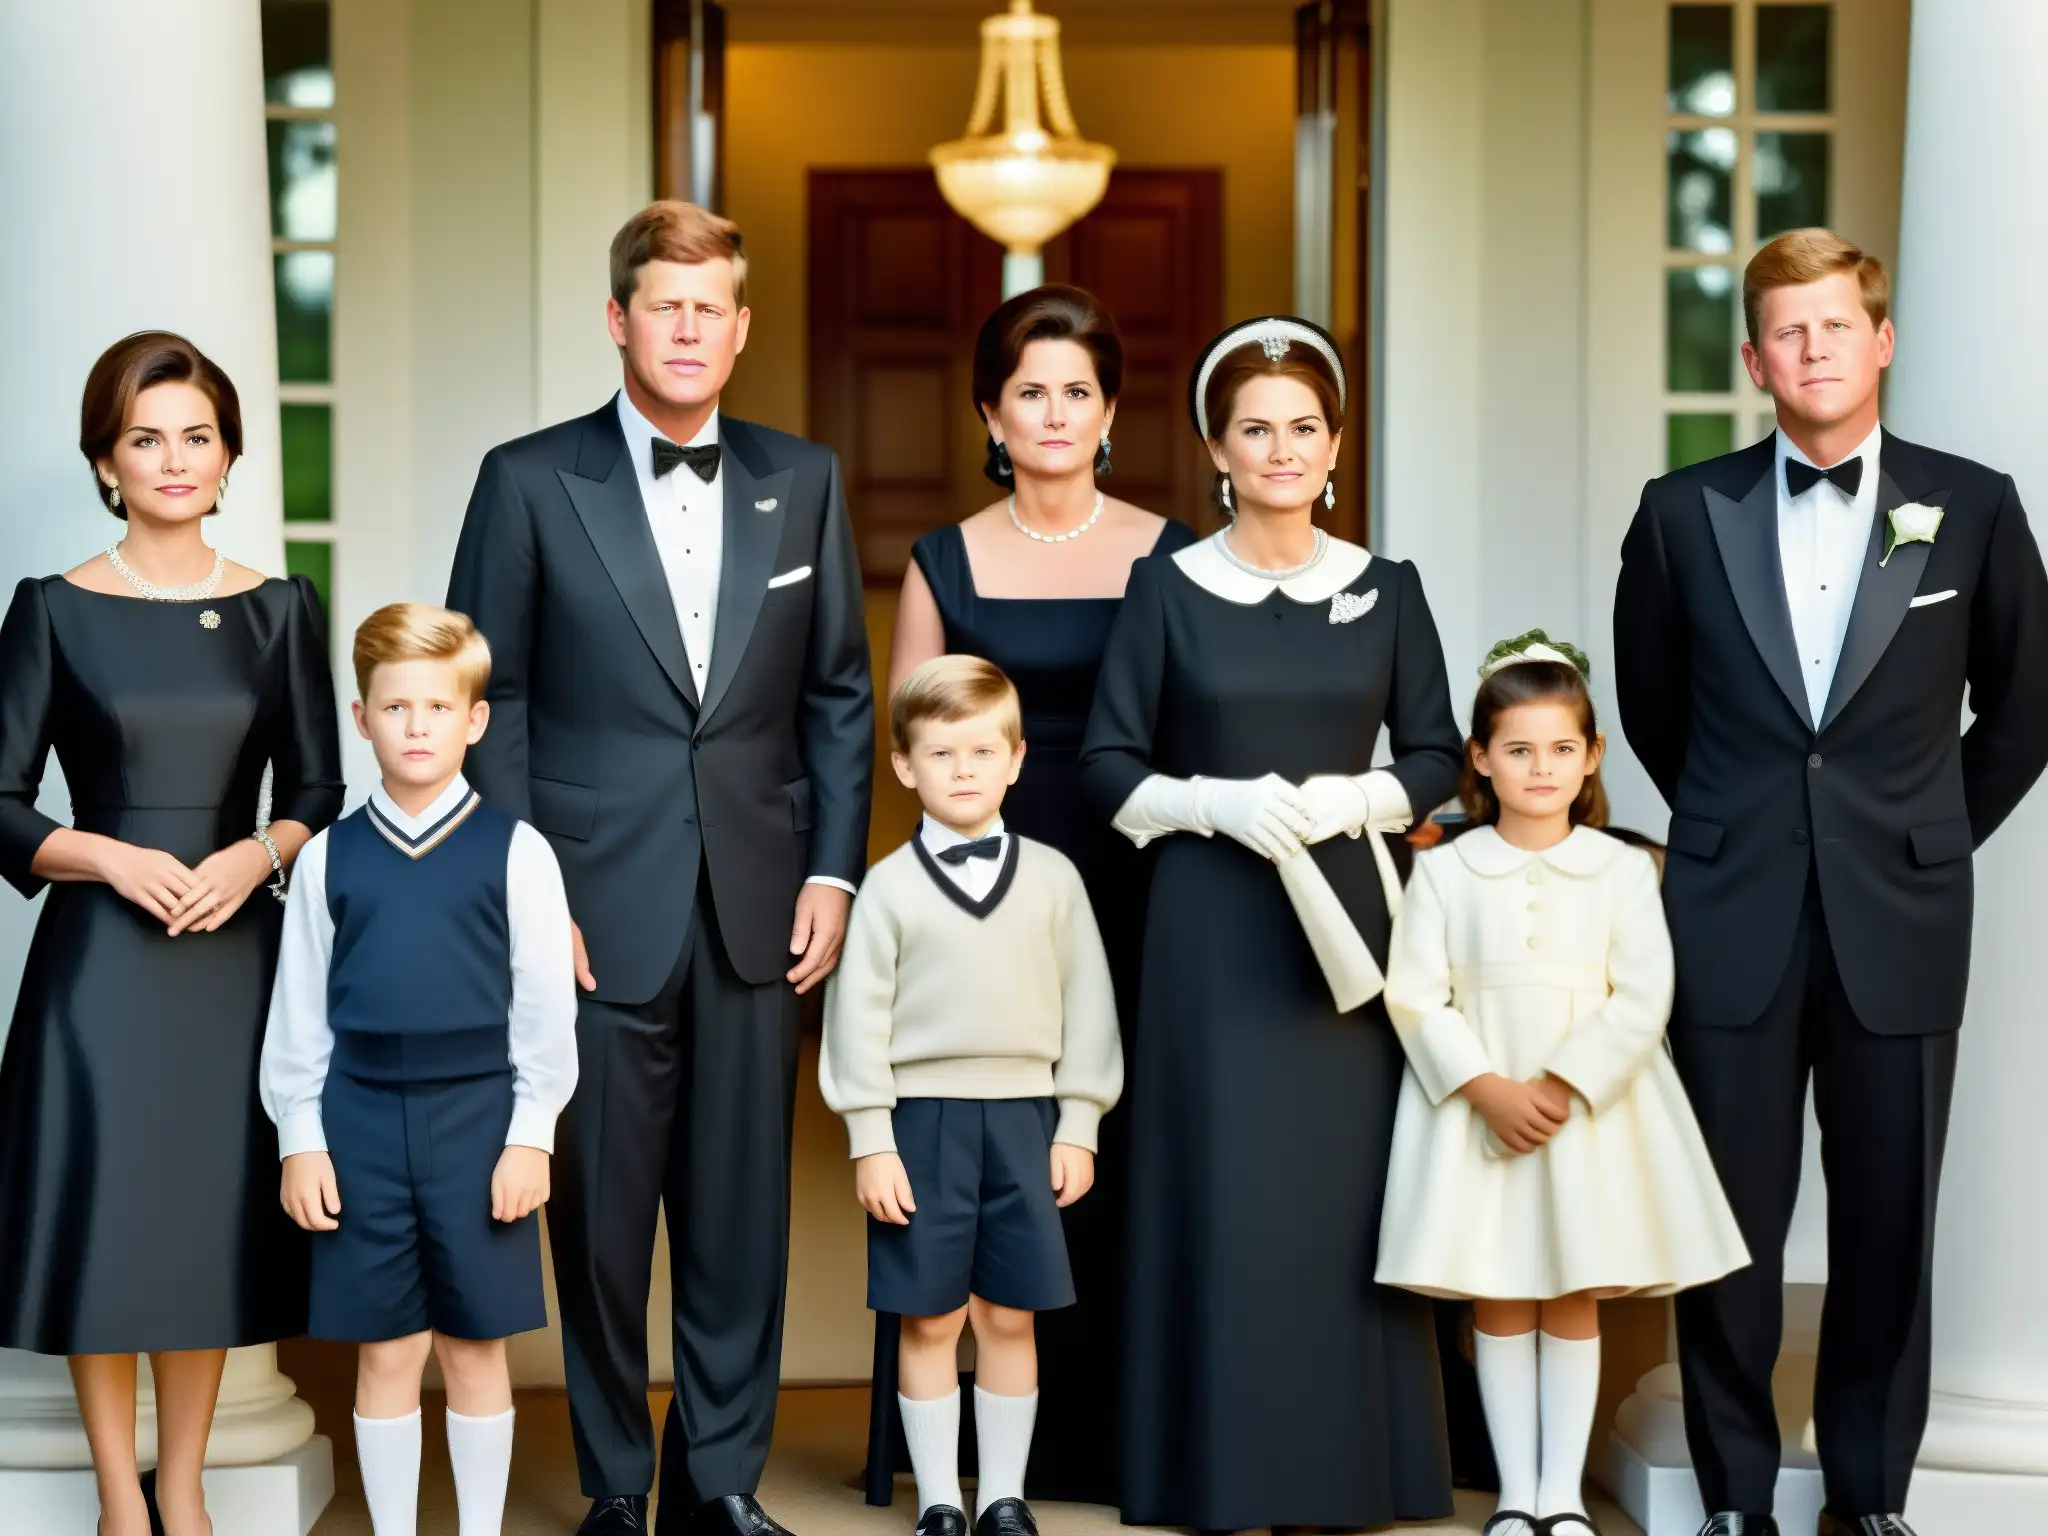 Una fotografía documental en blanco y negro de la familia Kennedy en un evento histórico